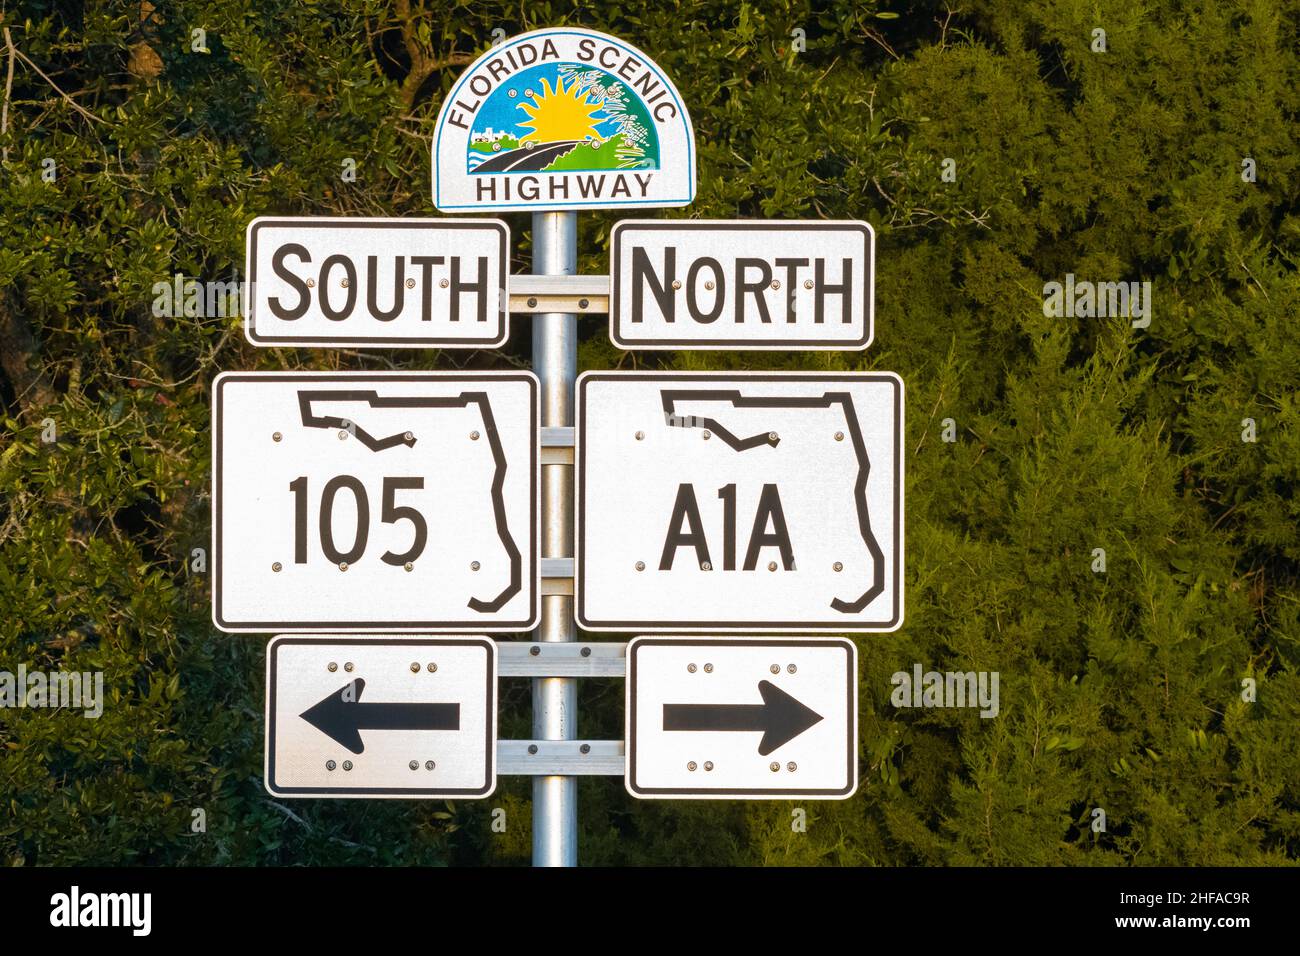 Florida Scenic Highway Road panneau indiquant State Road A1A sur fort George Island à la gare nord du ferry de St. John’s River à Jacksonville, Floride. Banque D'Images